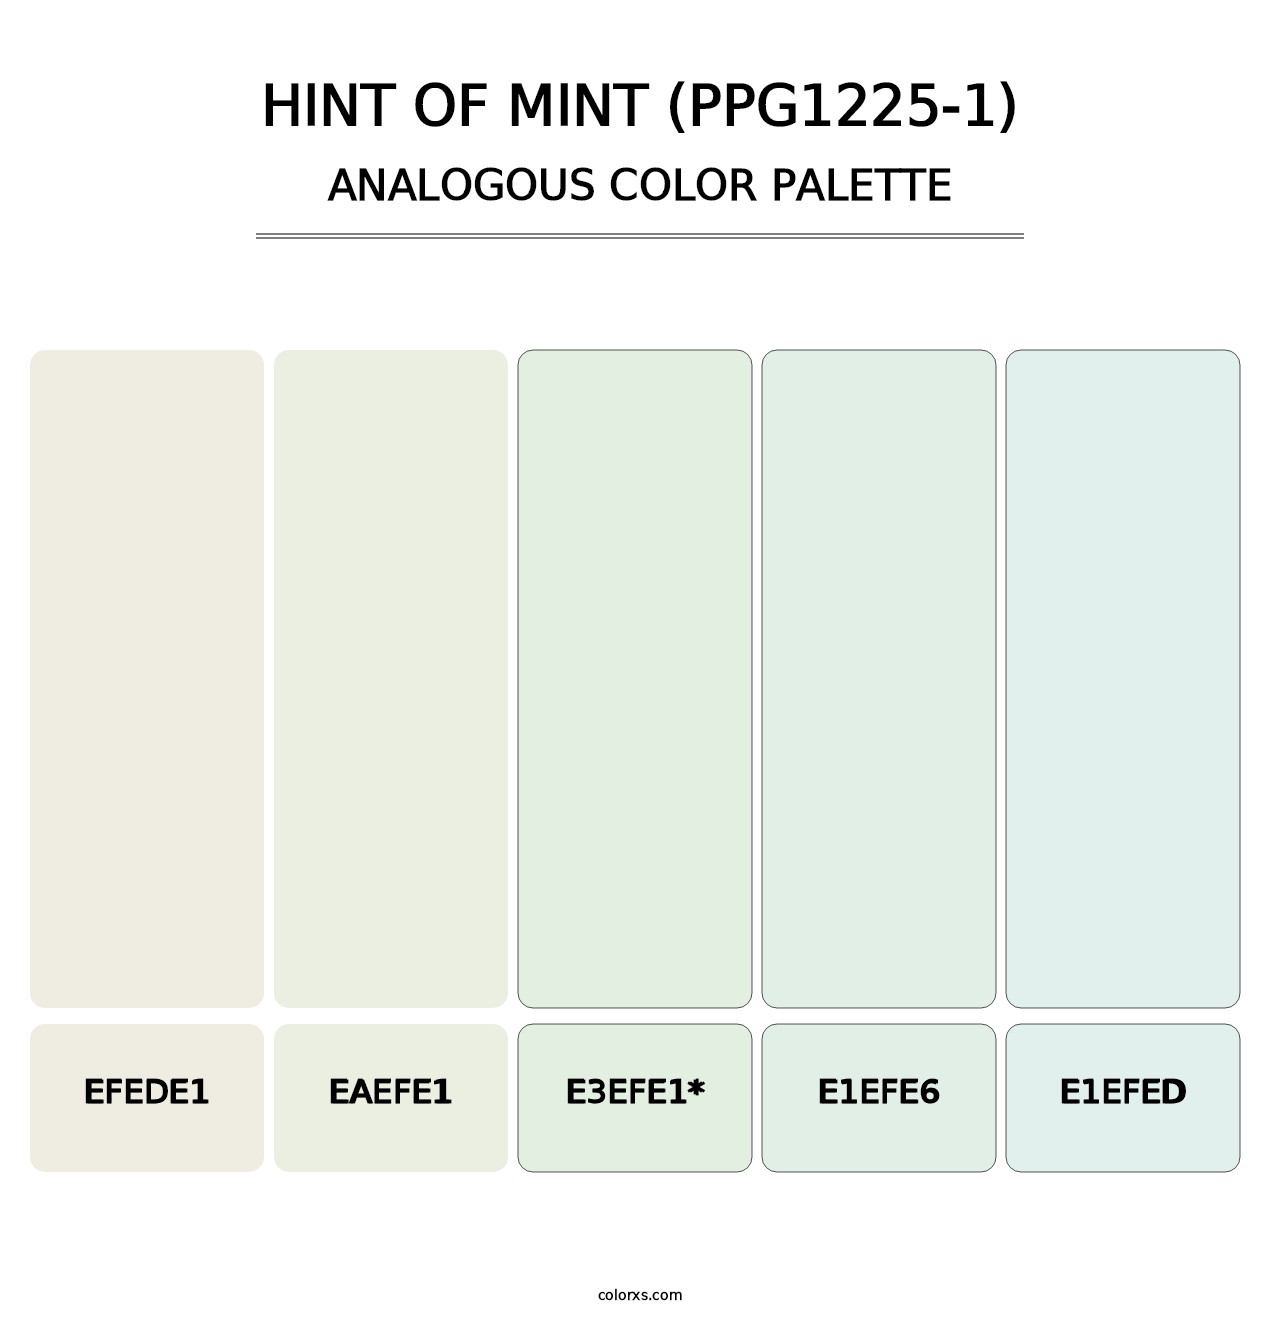 Hint Of Mint (PPG1225-1) - Analogous Color Palette